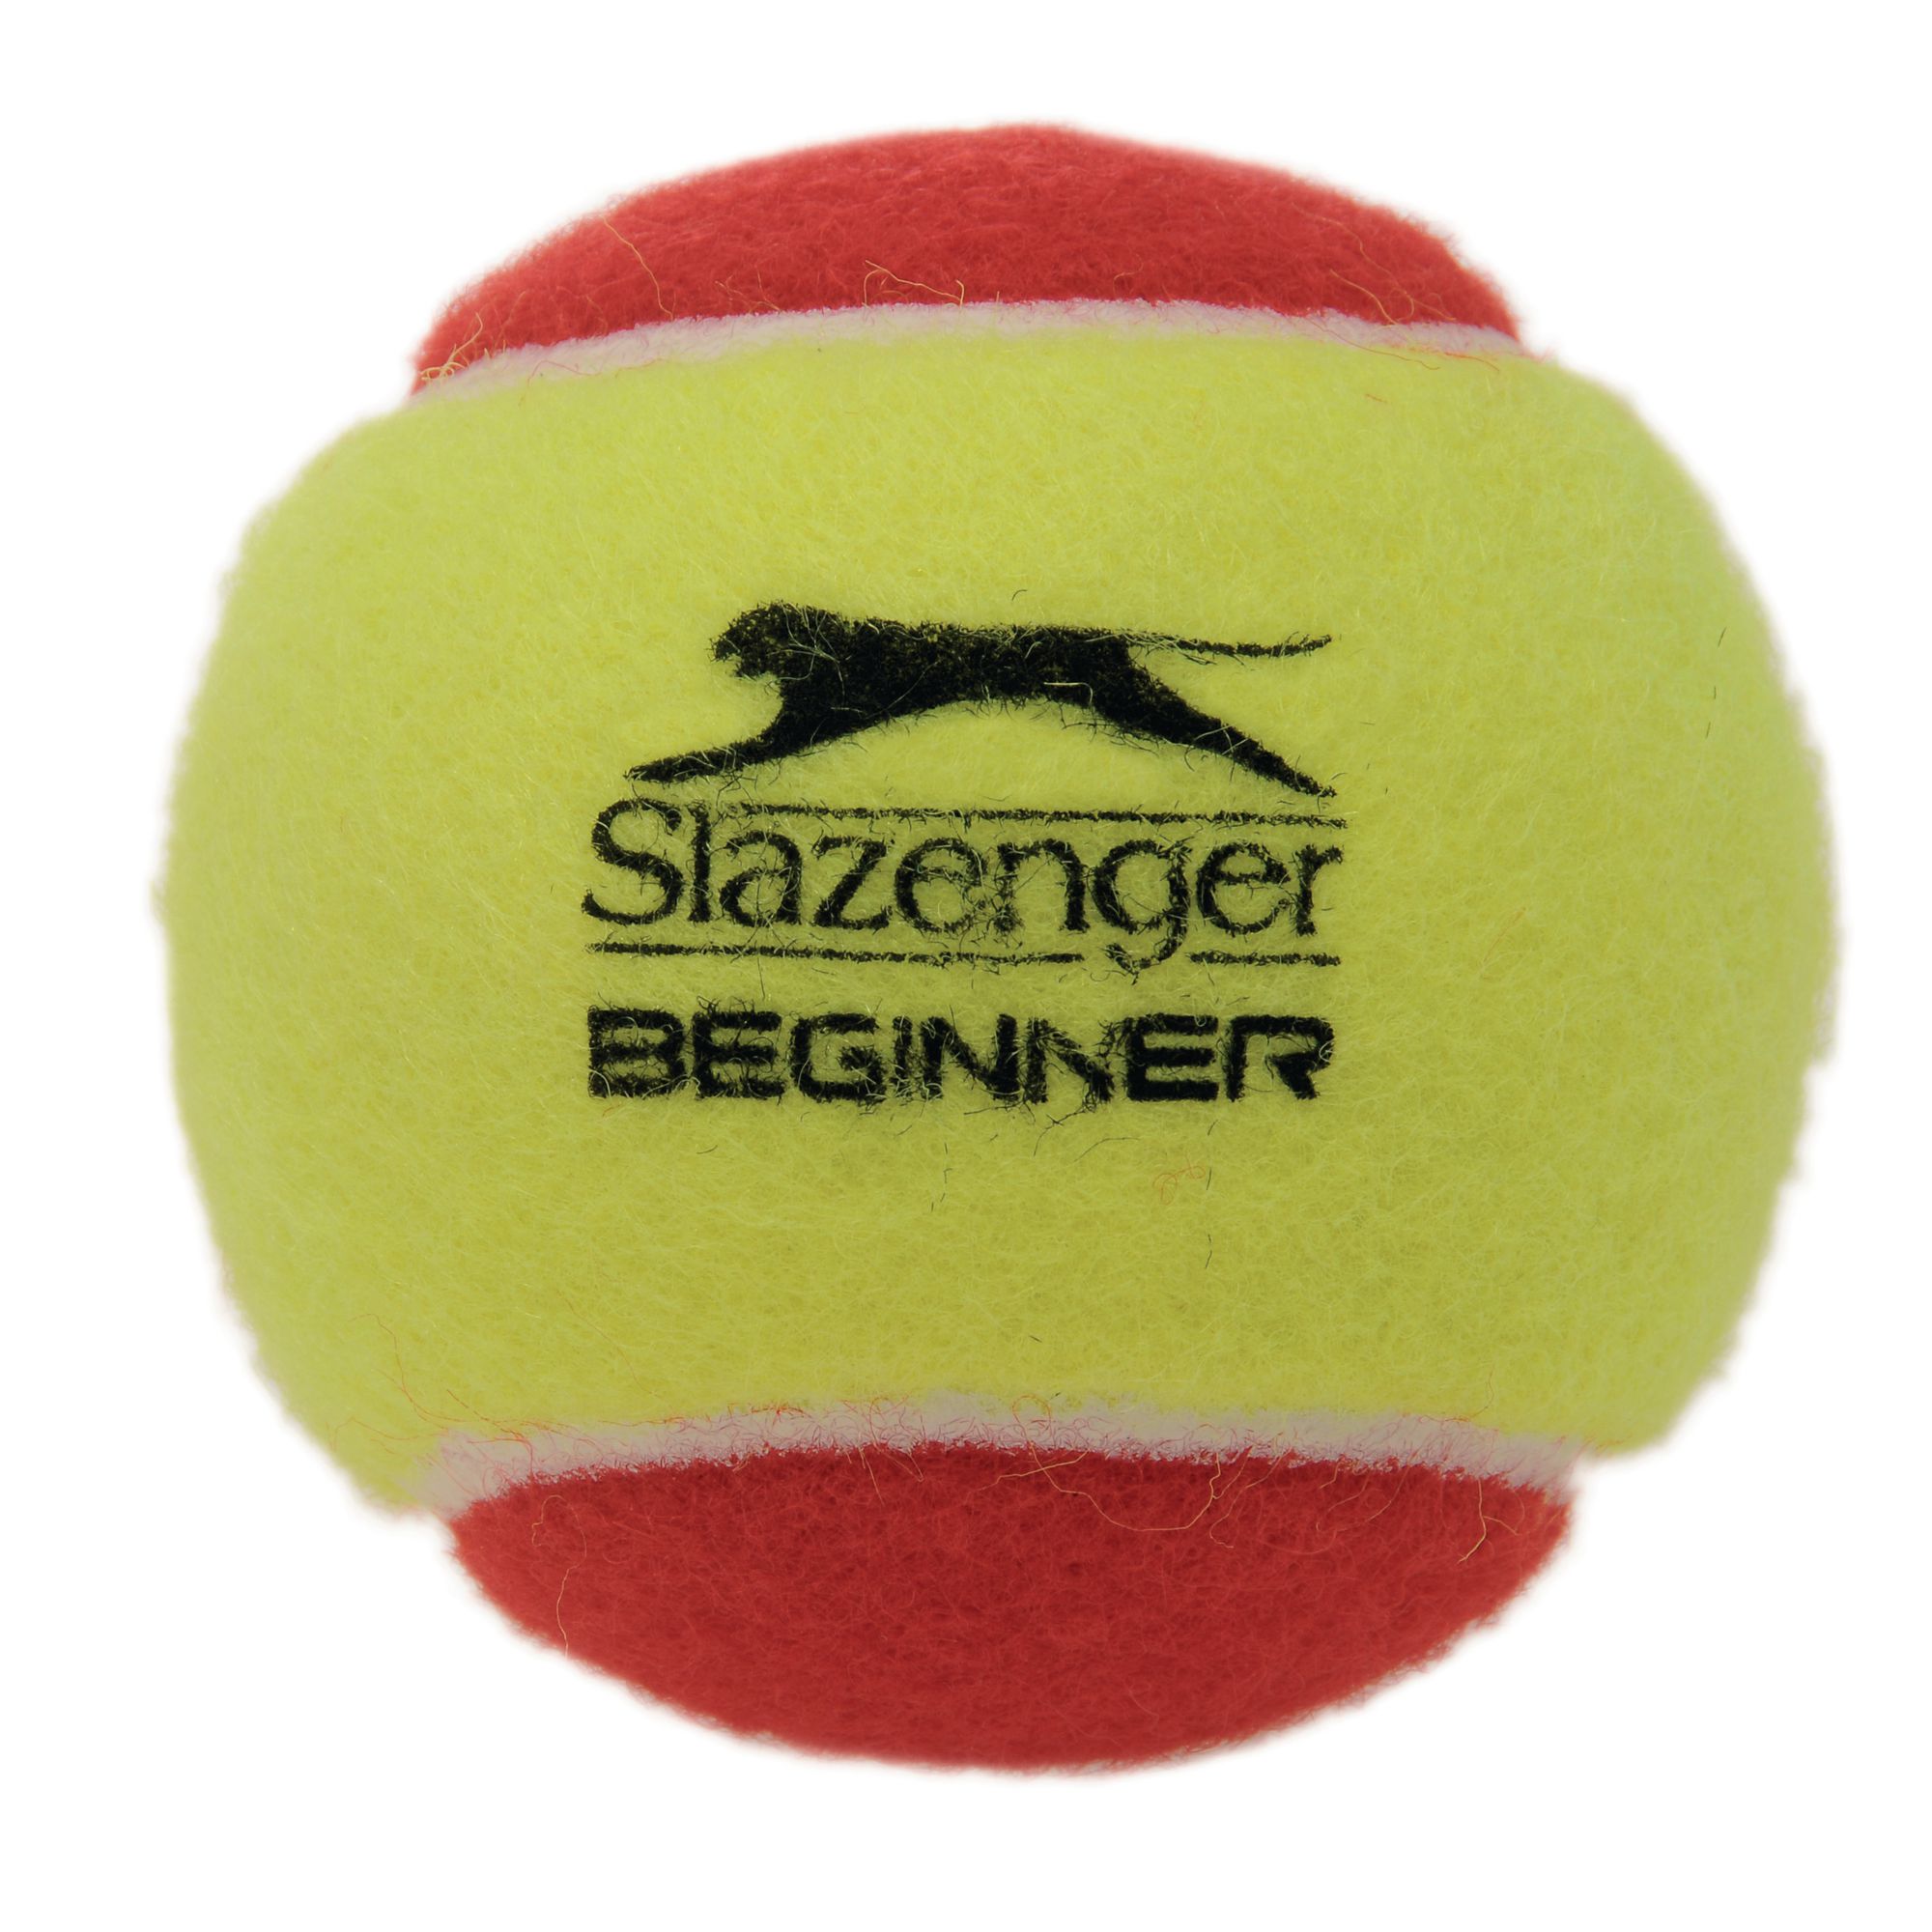 Slazenger Red Mini Tennis Ball P3